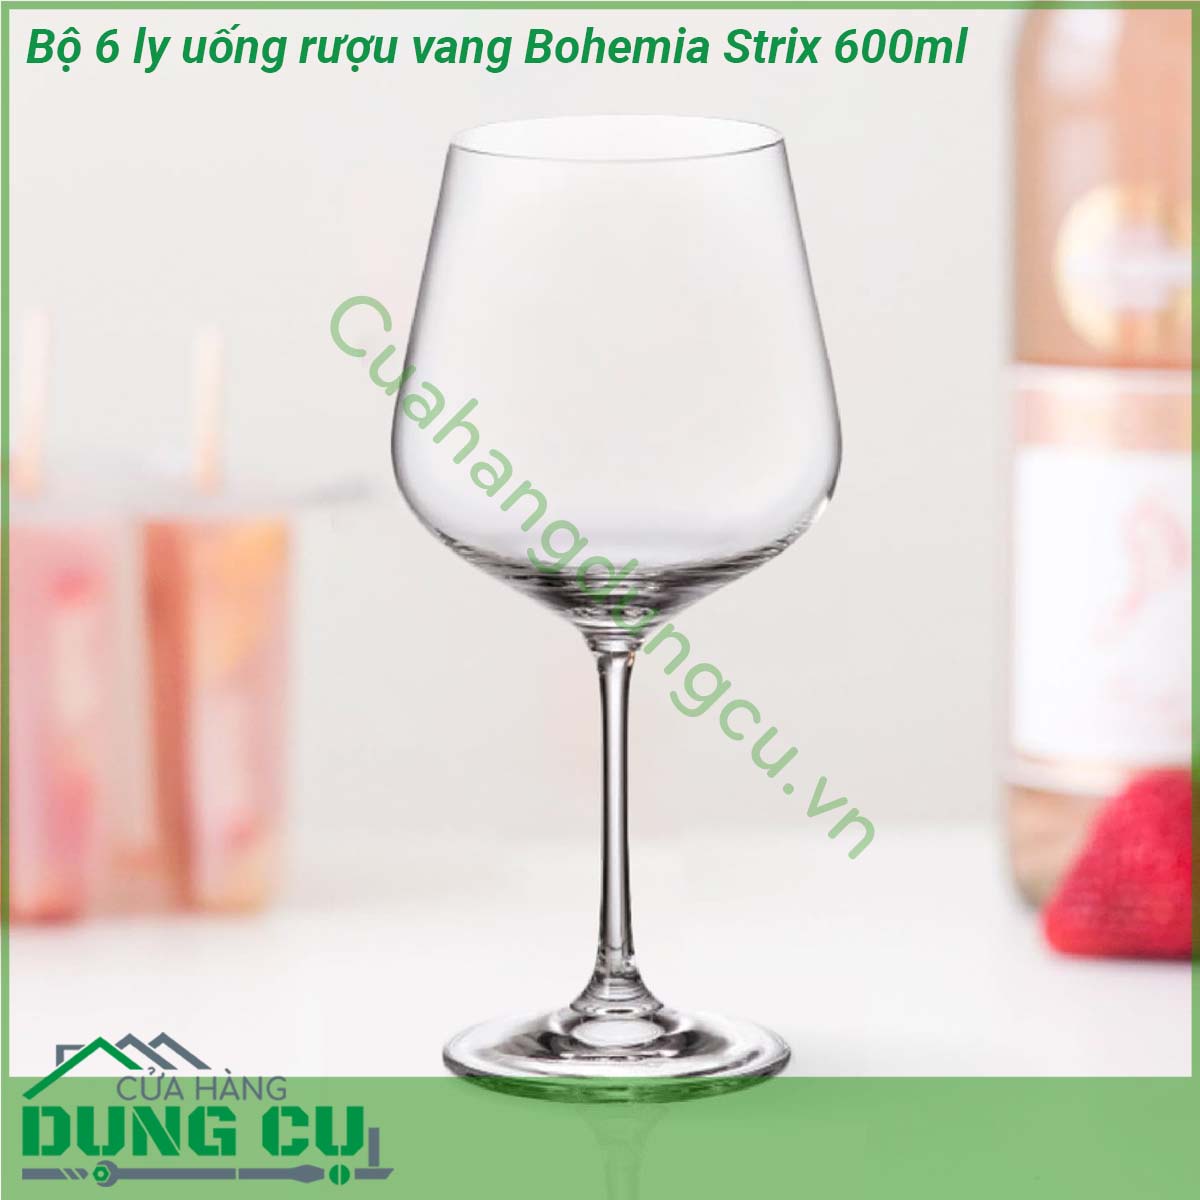 Bộ 6 ly uống rượu vang Bohemia Strix 600ml được làm bằng pha le cao cấp có thể chịu nhiệt lên hơn 400 độ C không có chứa chất BPA không bị thôi nhiễm các chất độc hại từ sản phẩm vào thức ăn an toàn với các loại thực phẩm có tính axit sử dụng an toàn trong máy rửa chén